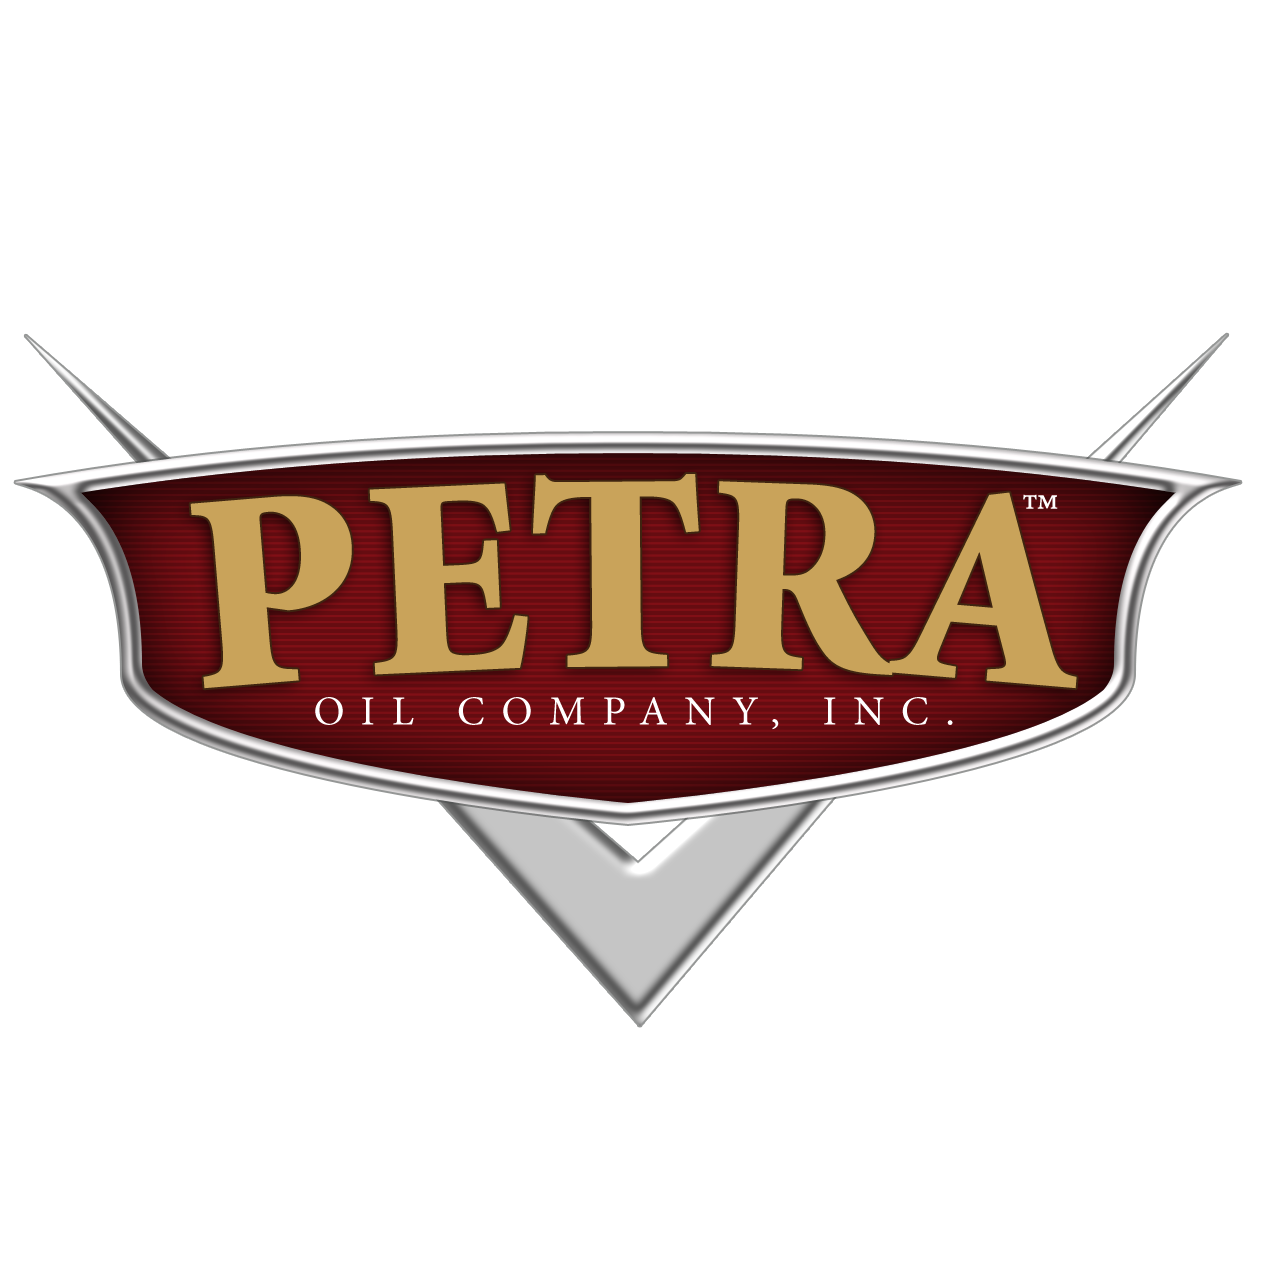 PETRA OIL COMPANY Logo